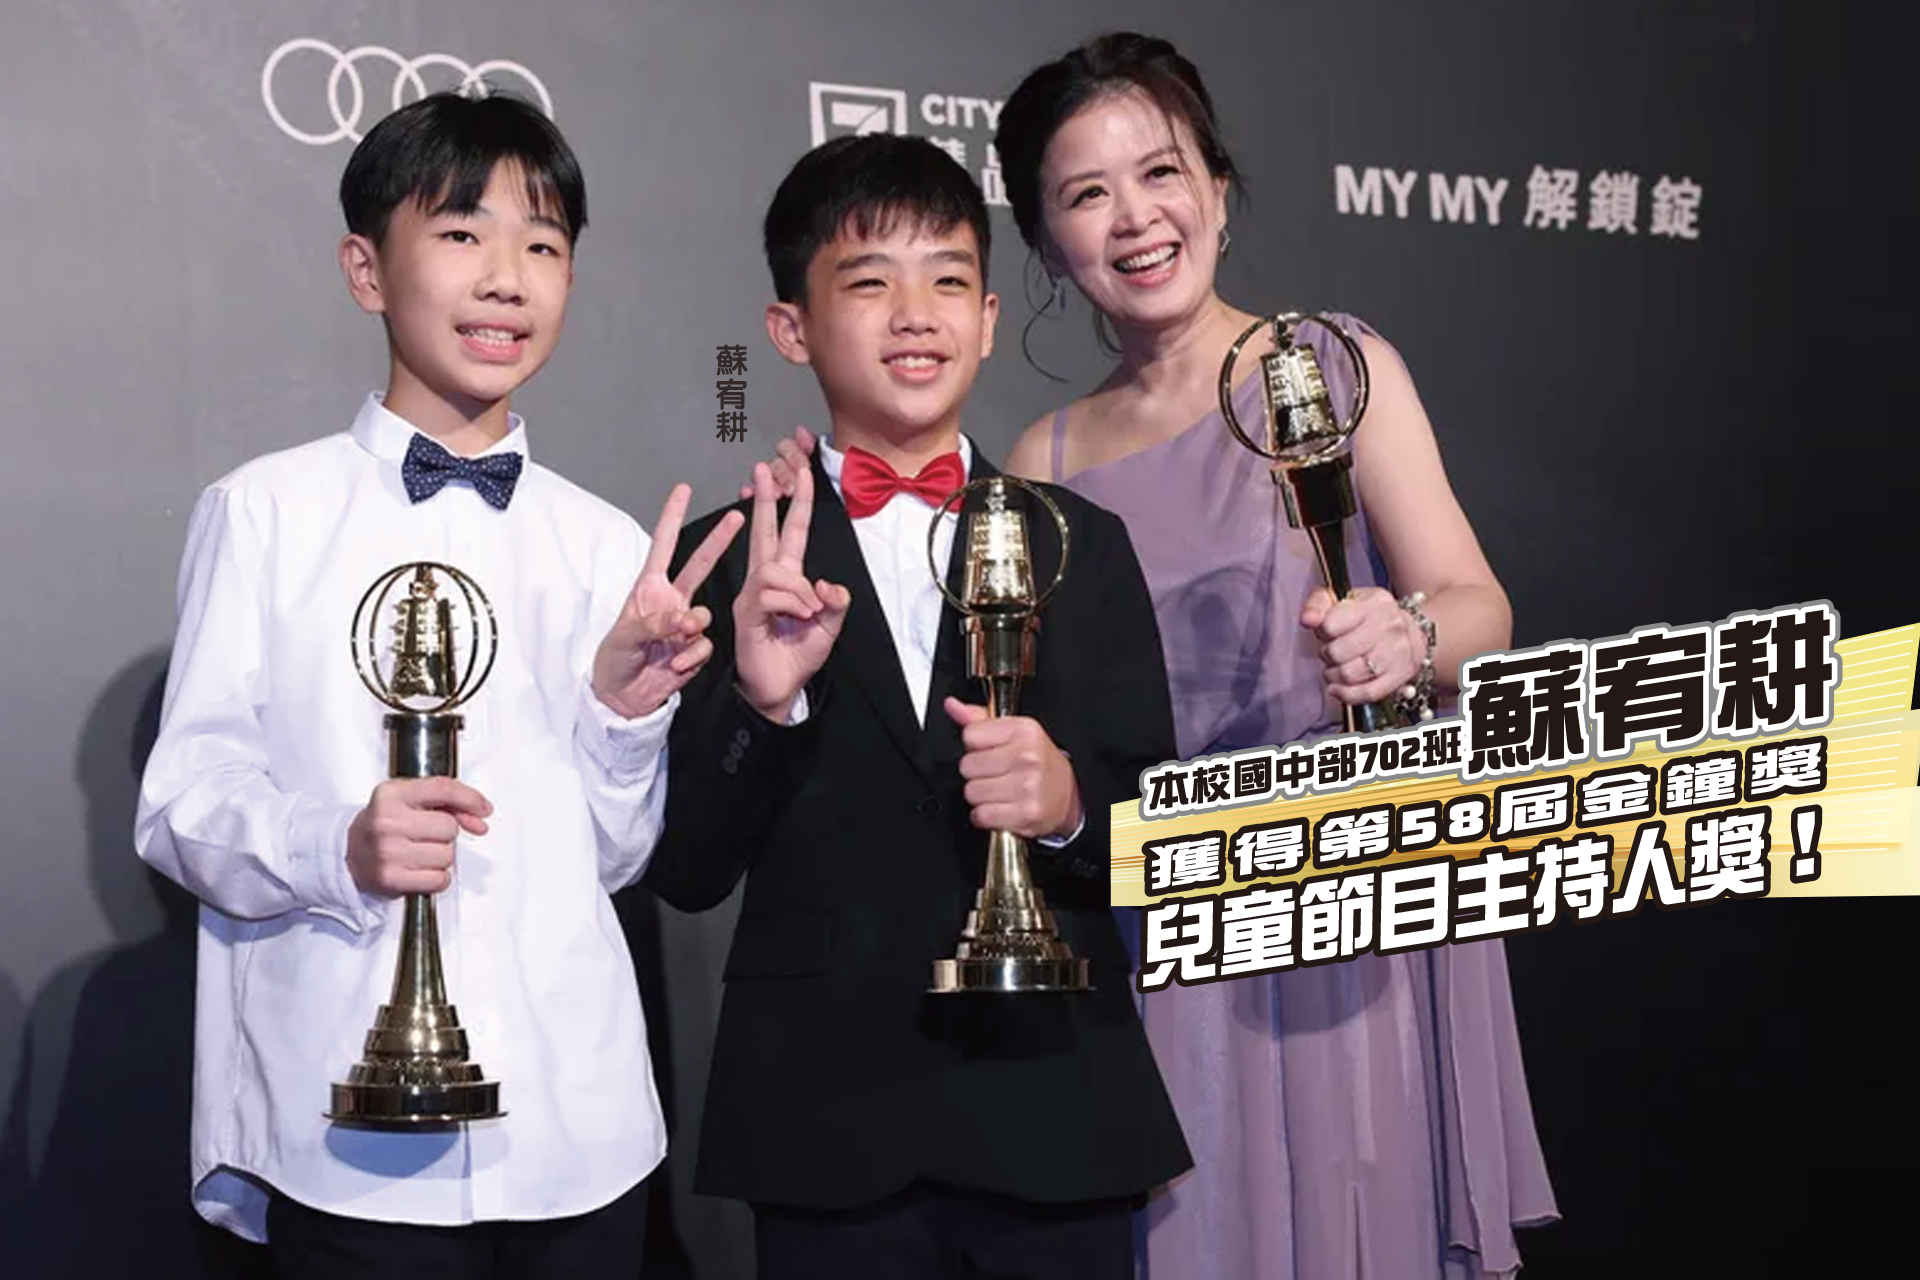 景文高中國中部 獲得第58屆金鐘獎 兒童節目主持人獎